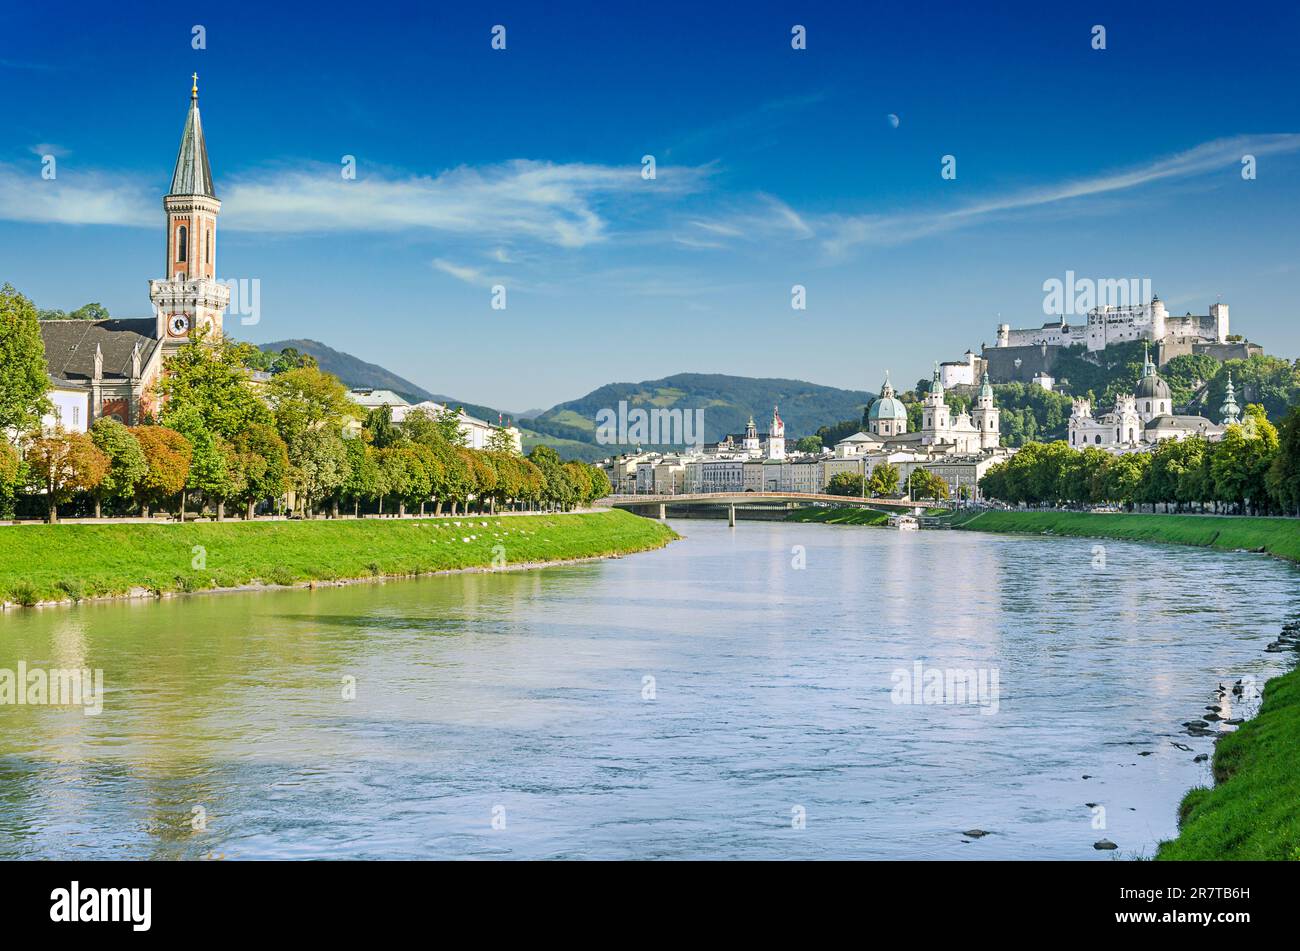 Salzburg, Stadt in Österreich, mit der Altstadt auf der anderen Seite der Salzach, Salzburger Dom und Hohensalzburg in der Ferne. Stockfoto